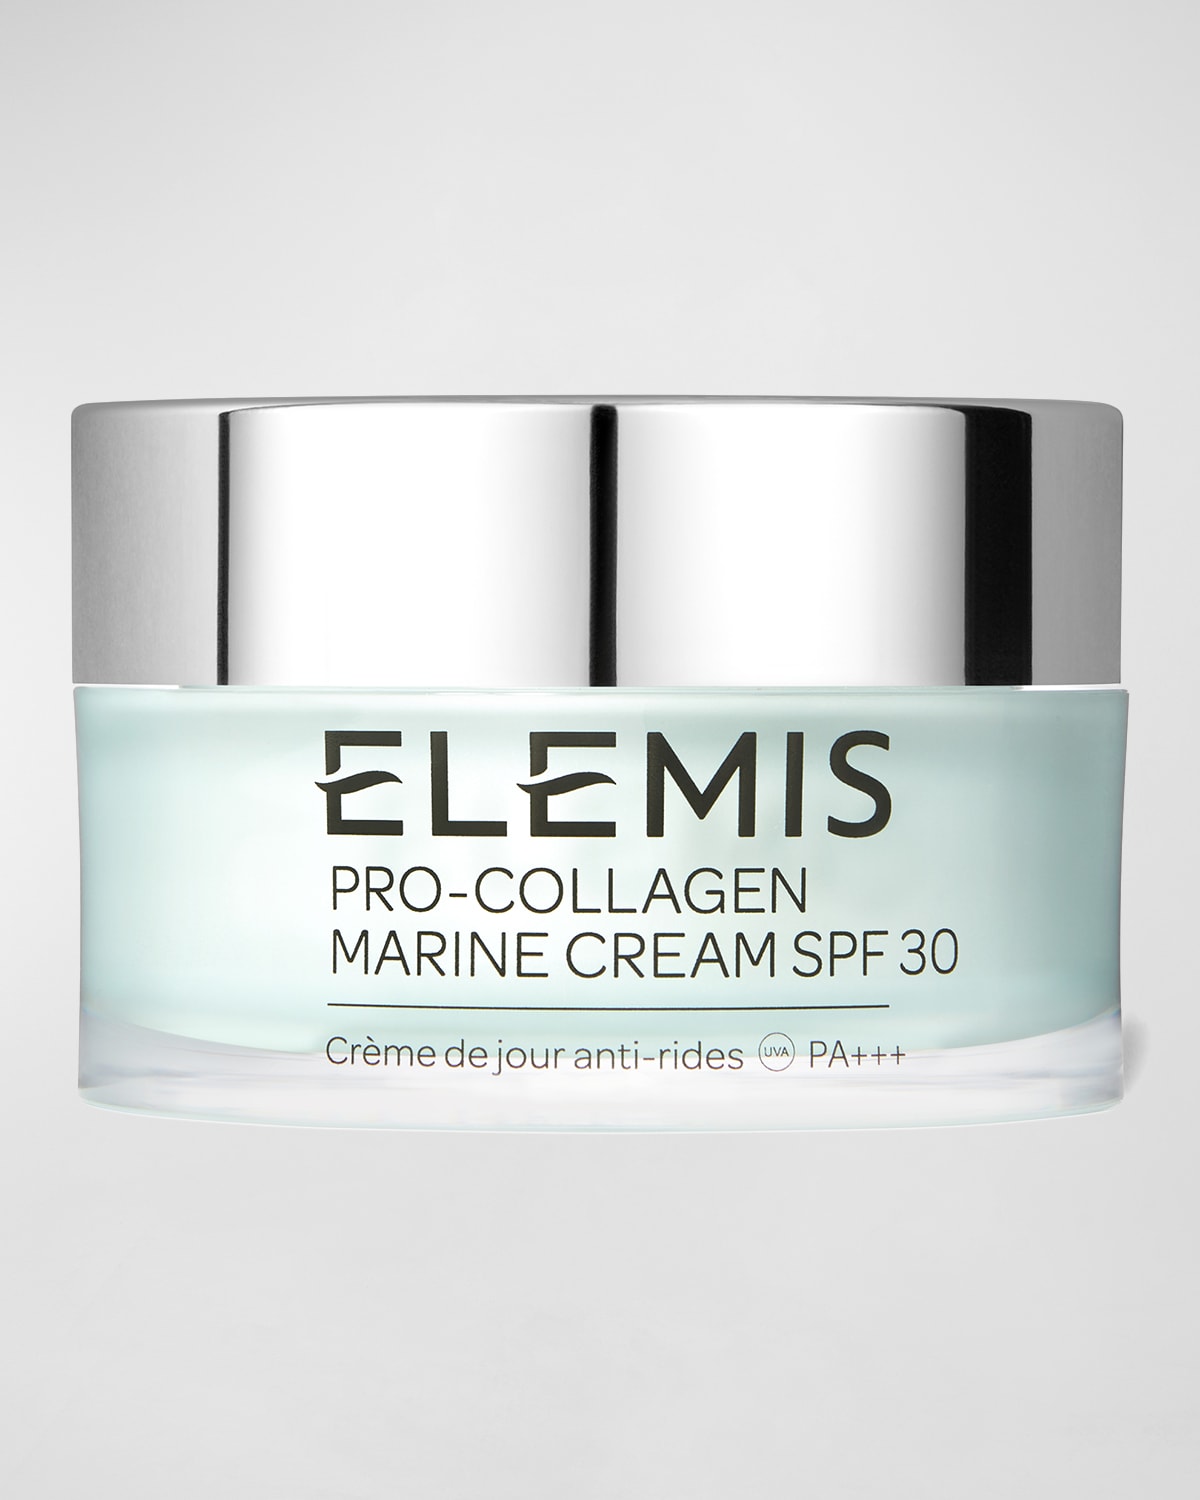 Pro-Collagen Marine Cream SPF 30, 1.7 oz.